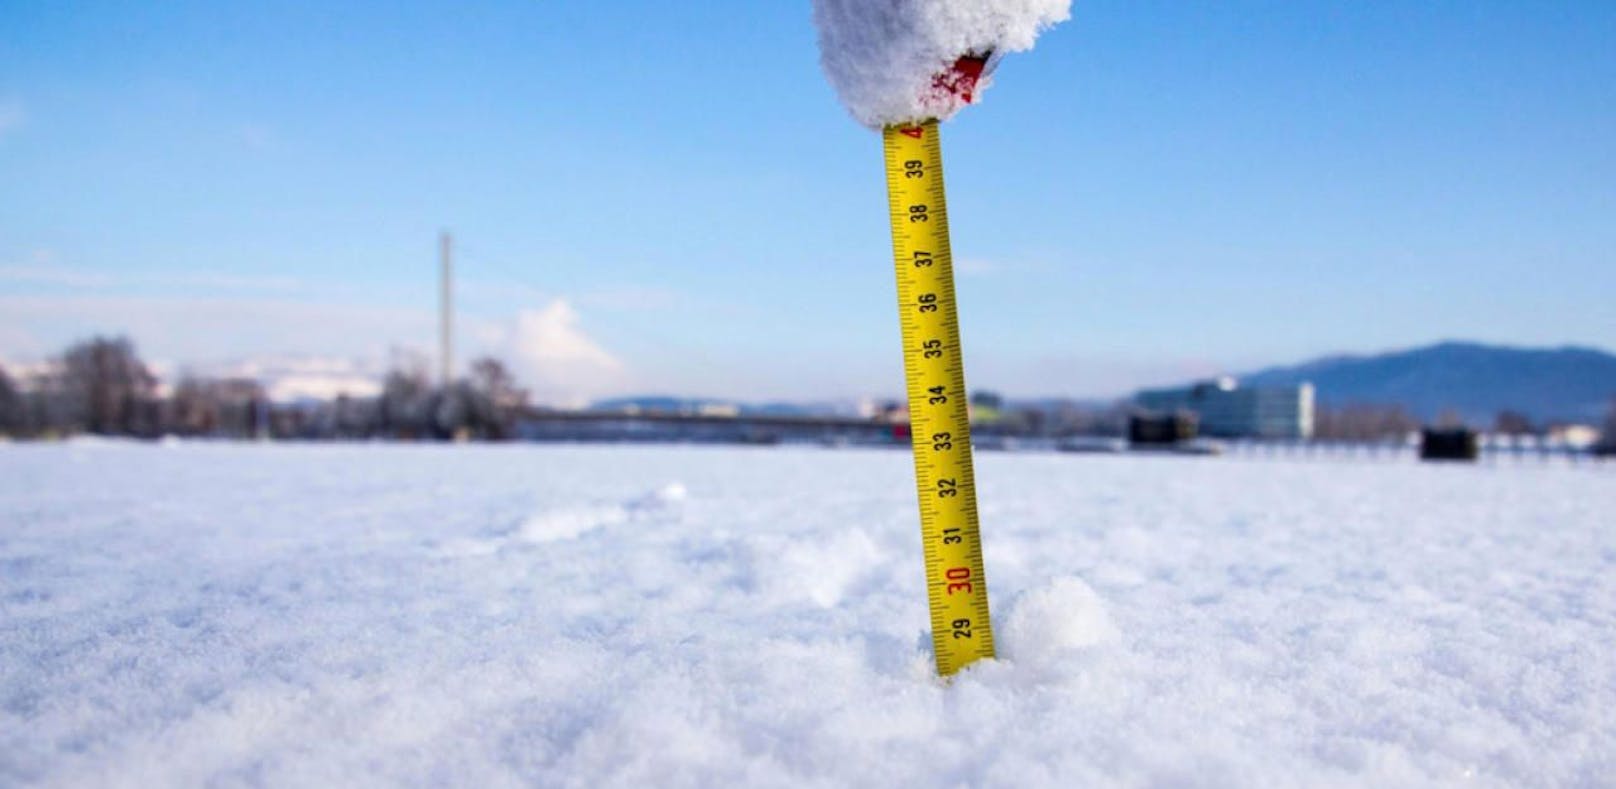 Zu viel Schnee – Behörden warnen vor großer Gefahr